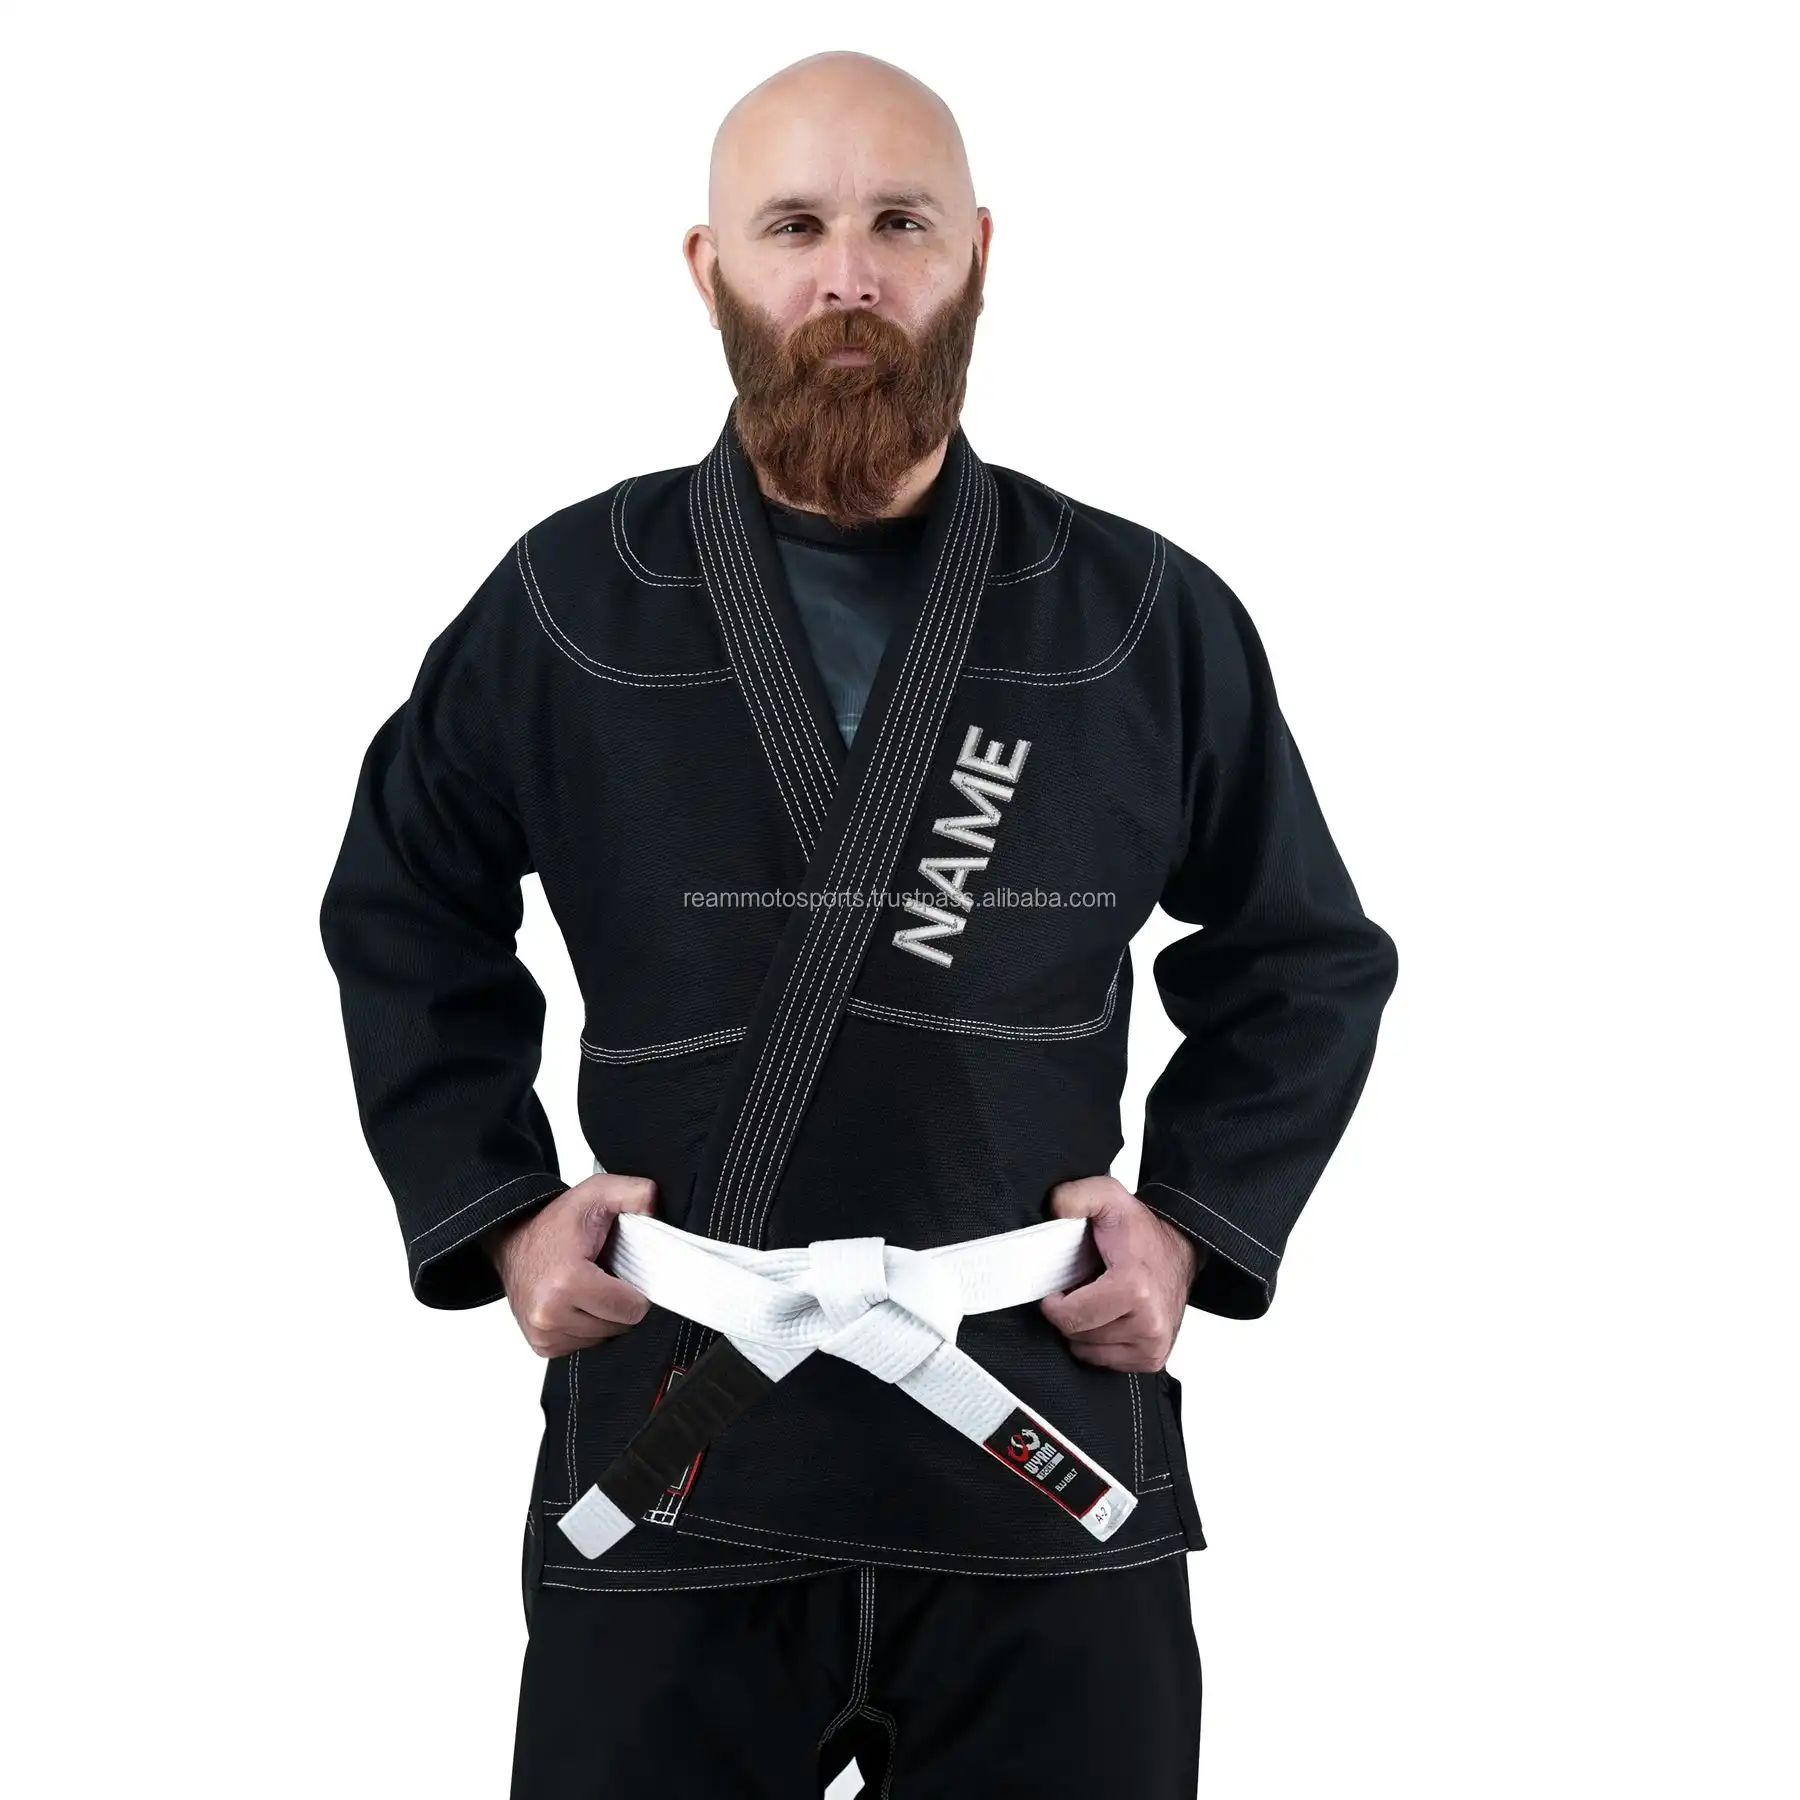 Hochwertige Kampfsport uniform in verschiedenen Designs und Farben Leichte Herren Hochwertige BJJ GI Uniform